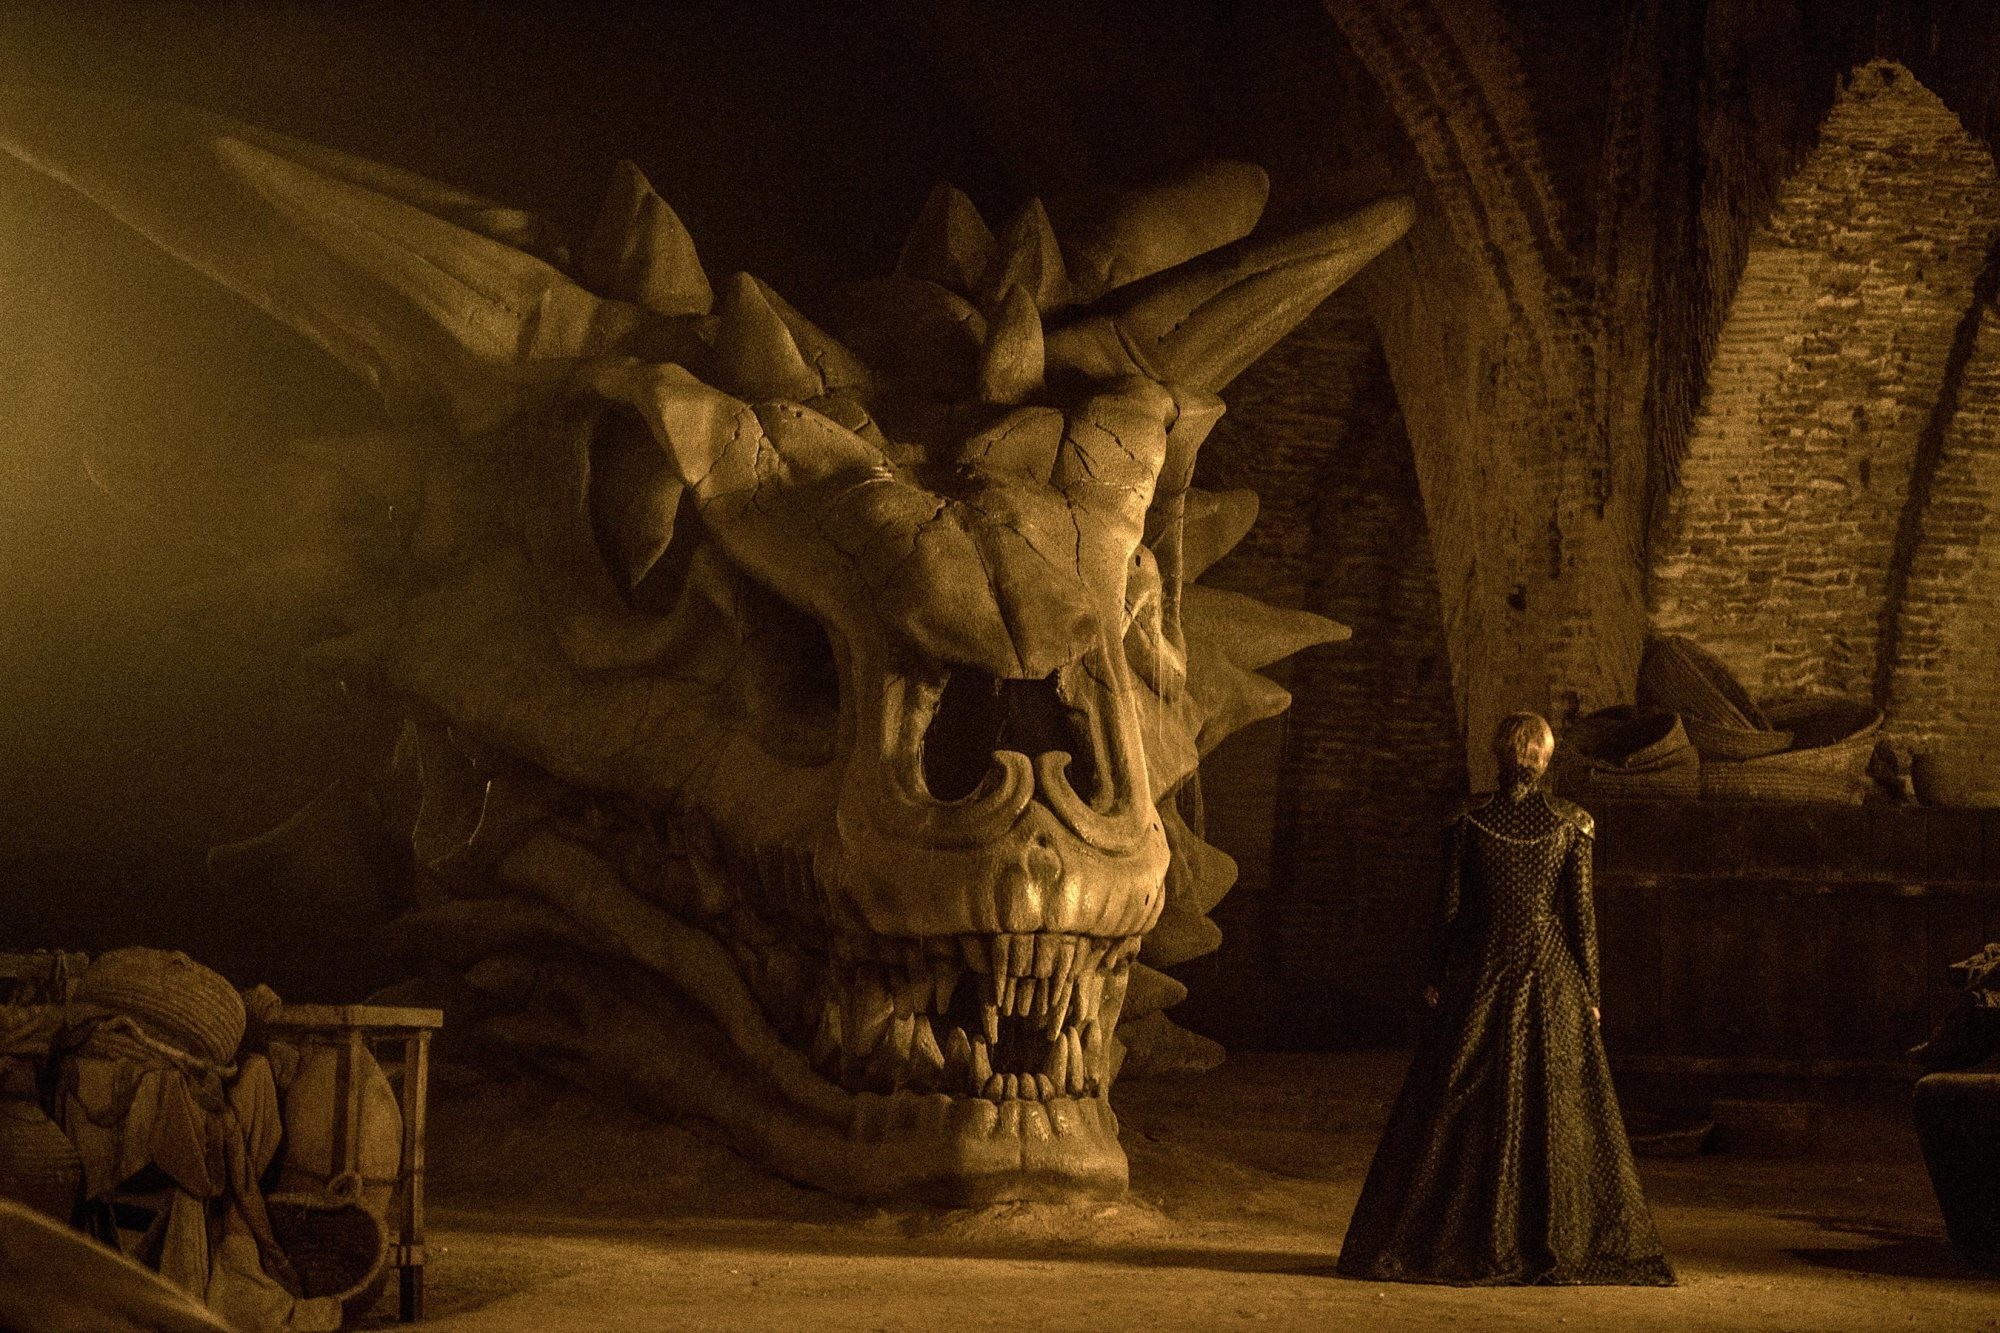 در روزهای اخیر فرآیند انتخاب بازیگران سریال «خاندان اژدها» (House of the Dragon) که تنها یکی از اسپین آف های سریال محبوب «بازی تاج و تخت» (Game of Thrones) به شمار می آید آغاز شده است.